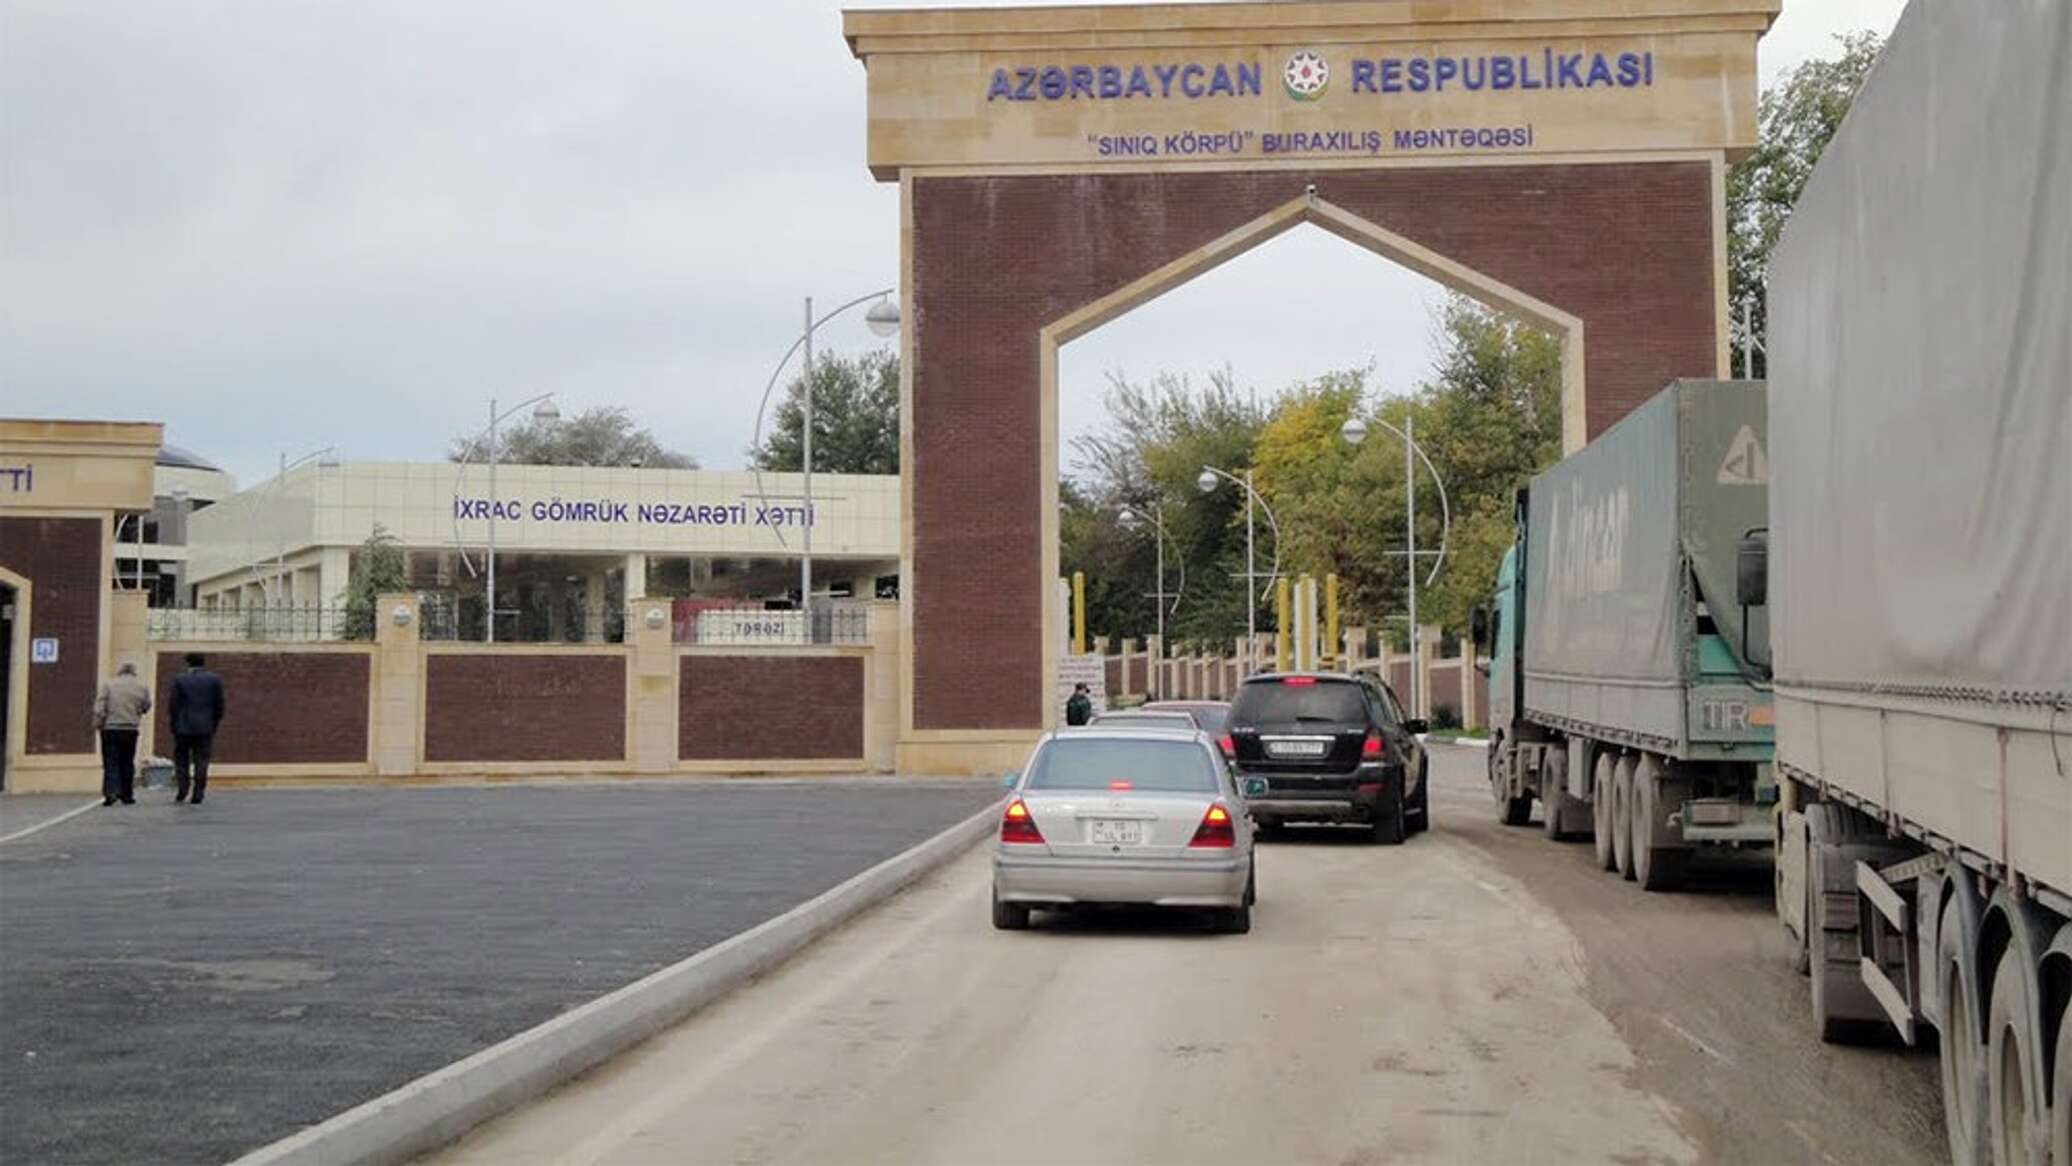 граница россии с азербайджаном